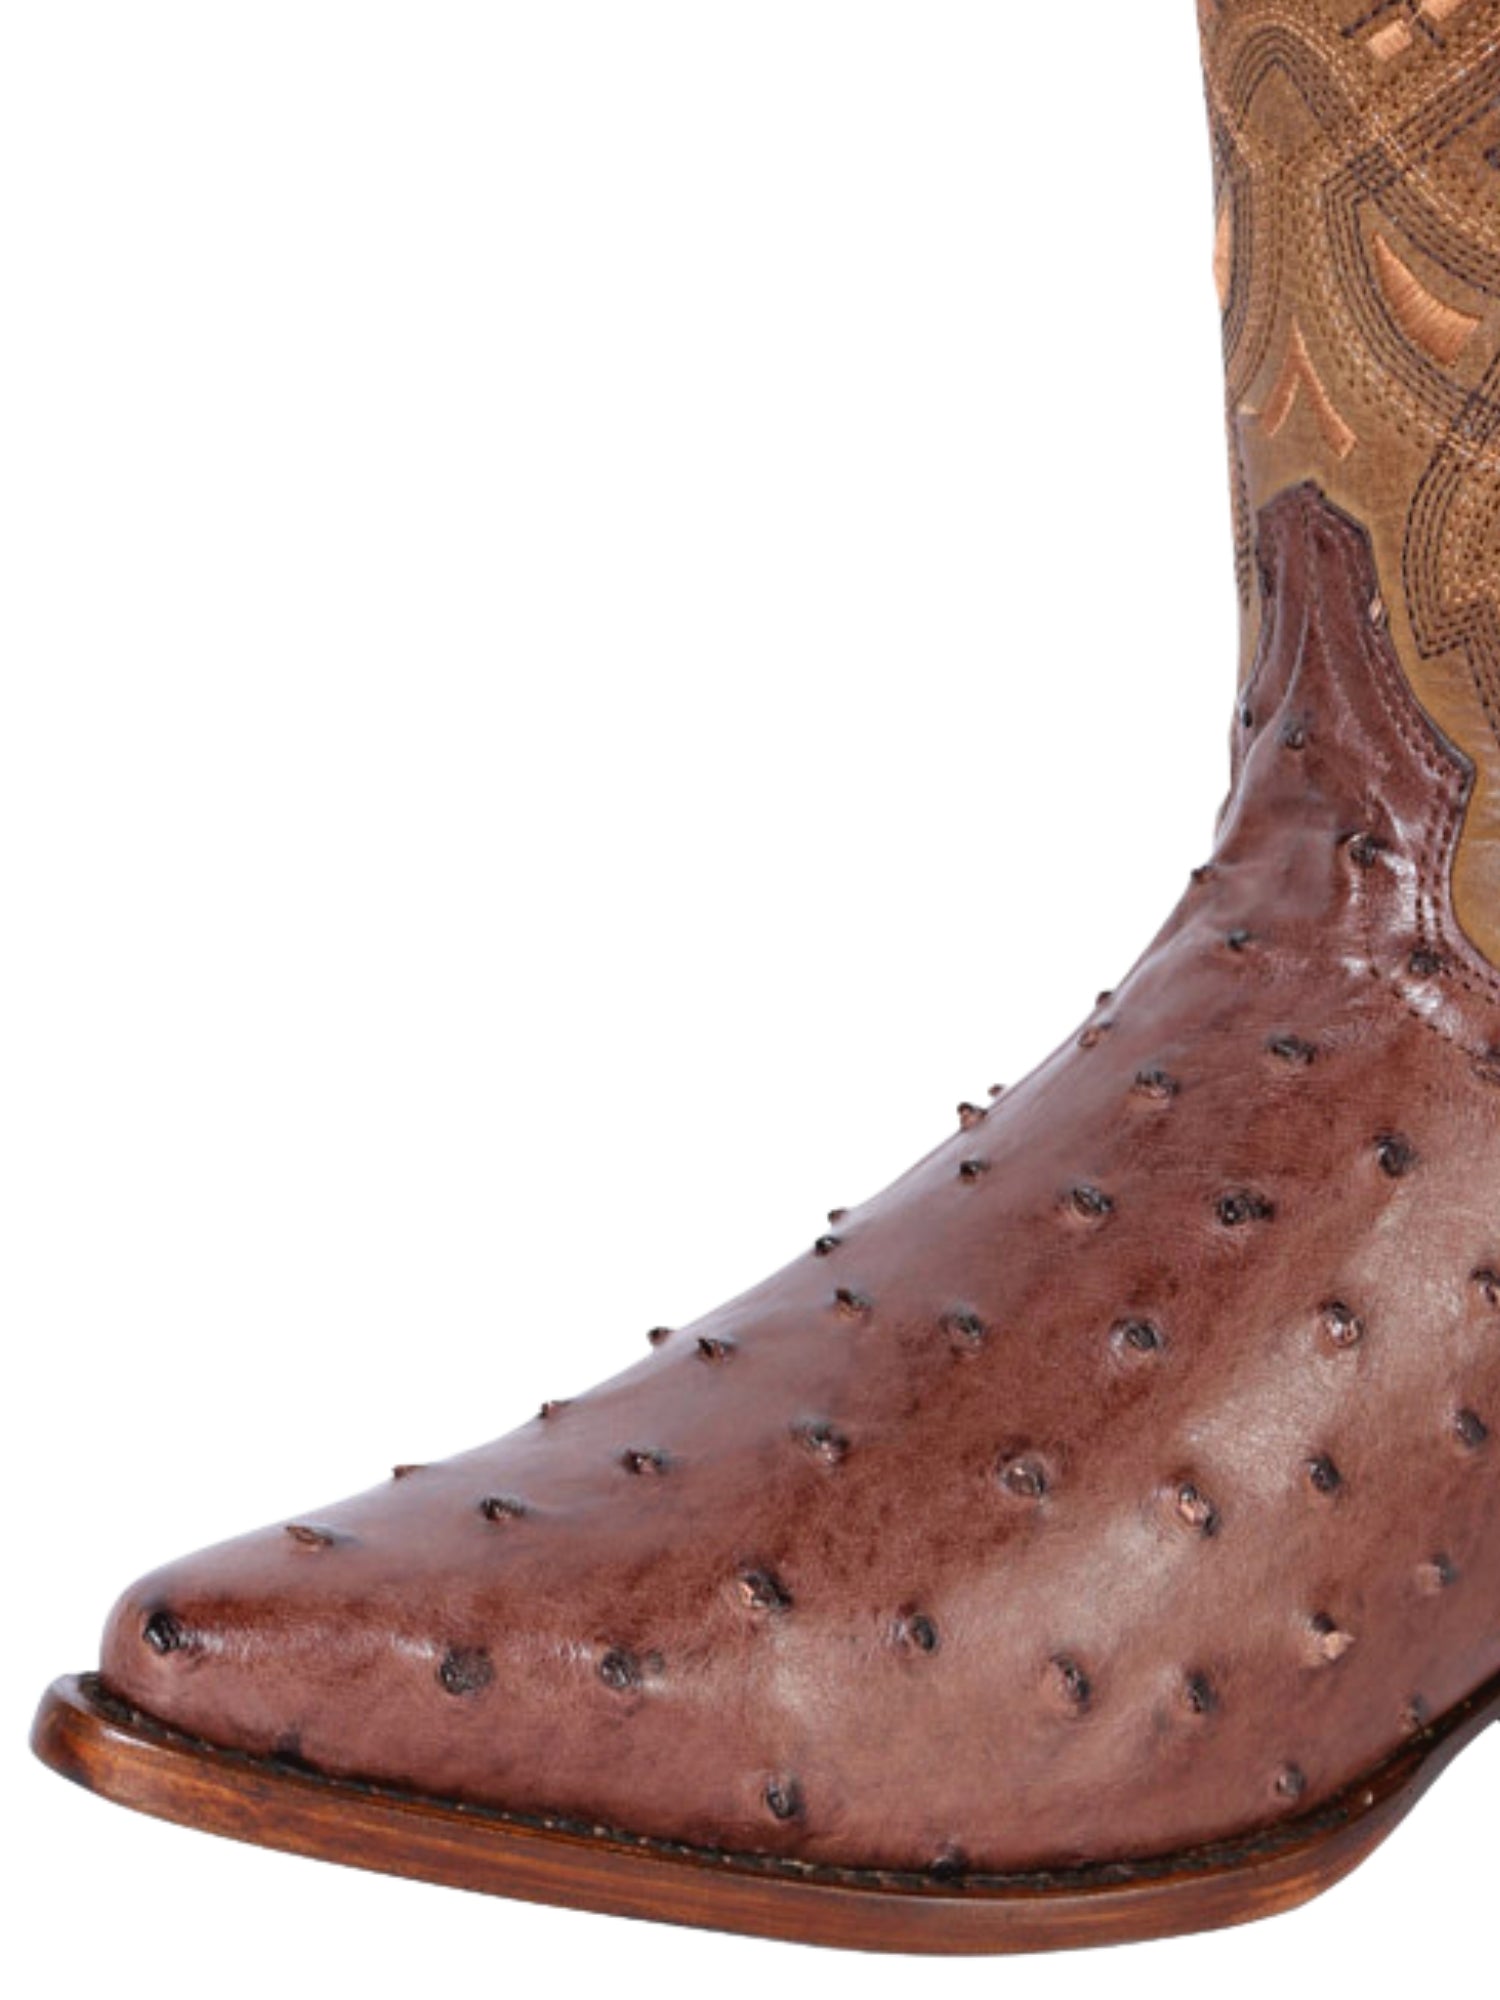 Botas Vaqueras Exoticas de Avestruz Original para Hombre '100 Años' - ID: 42767 Cowboy Boots 100 Años 